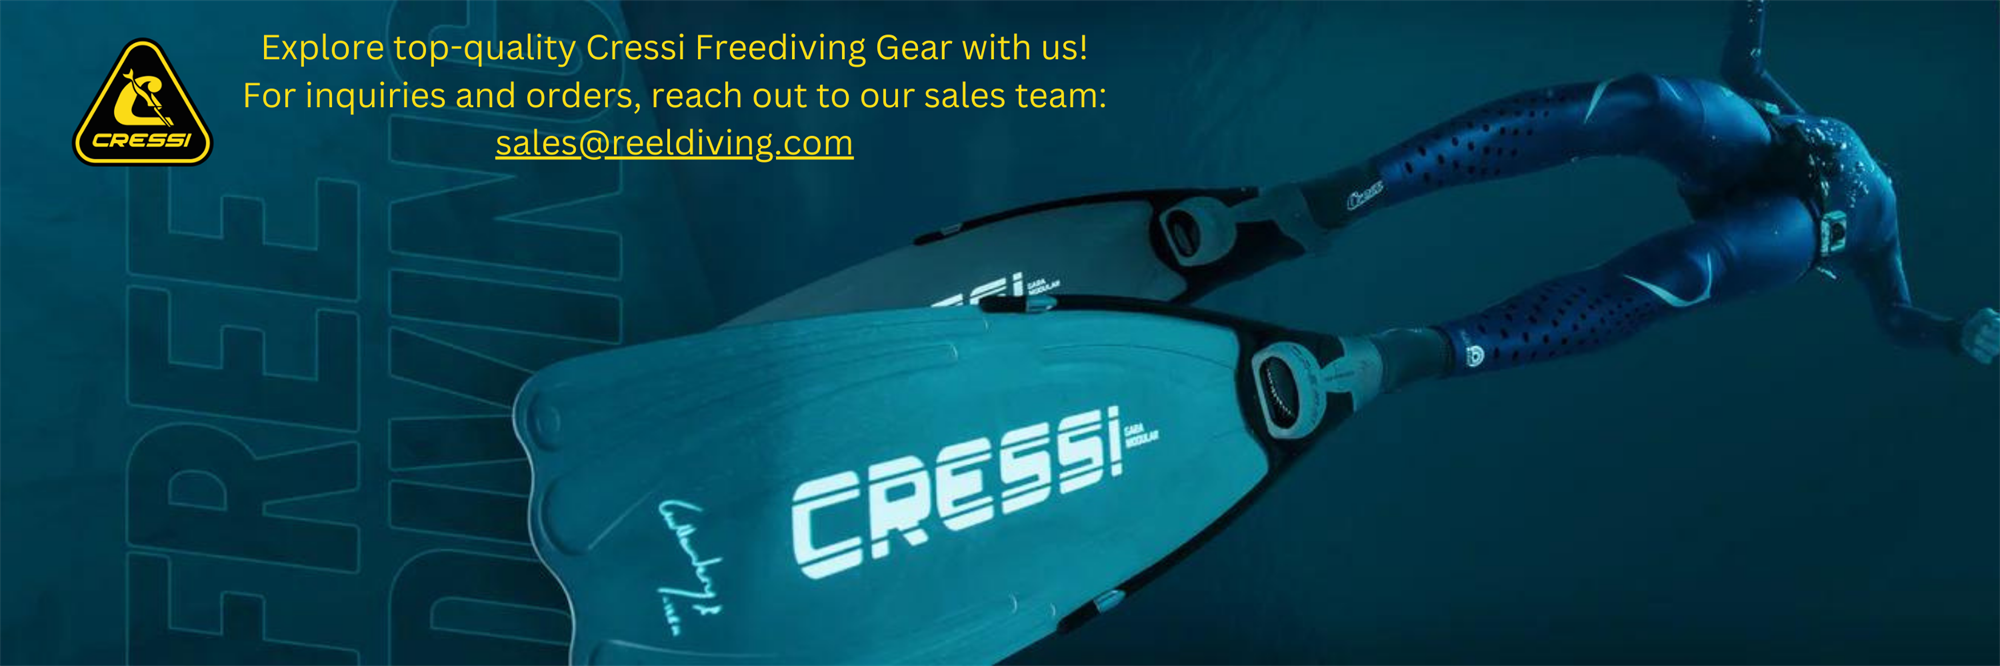 website banner cressi freediving  (1).png 